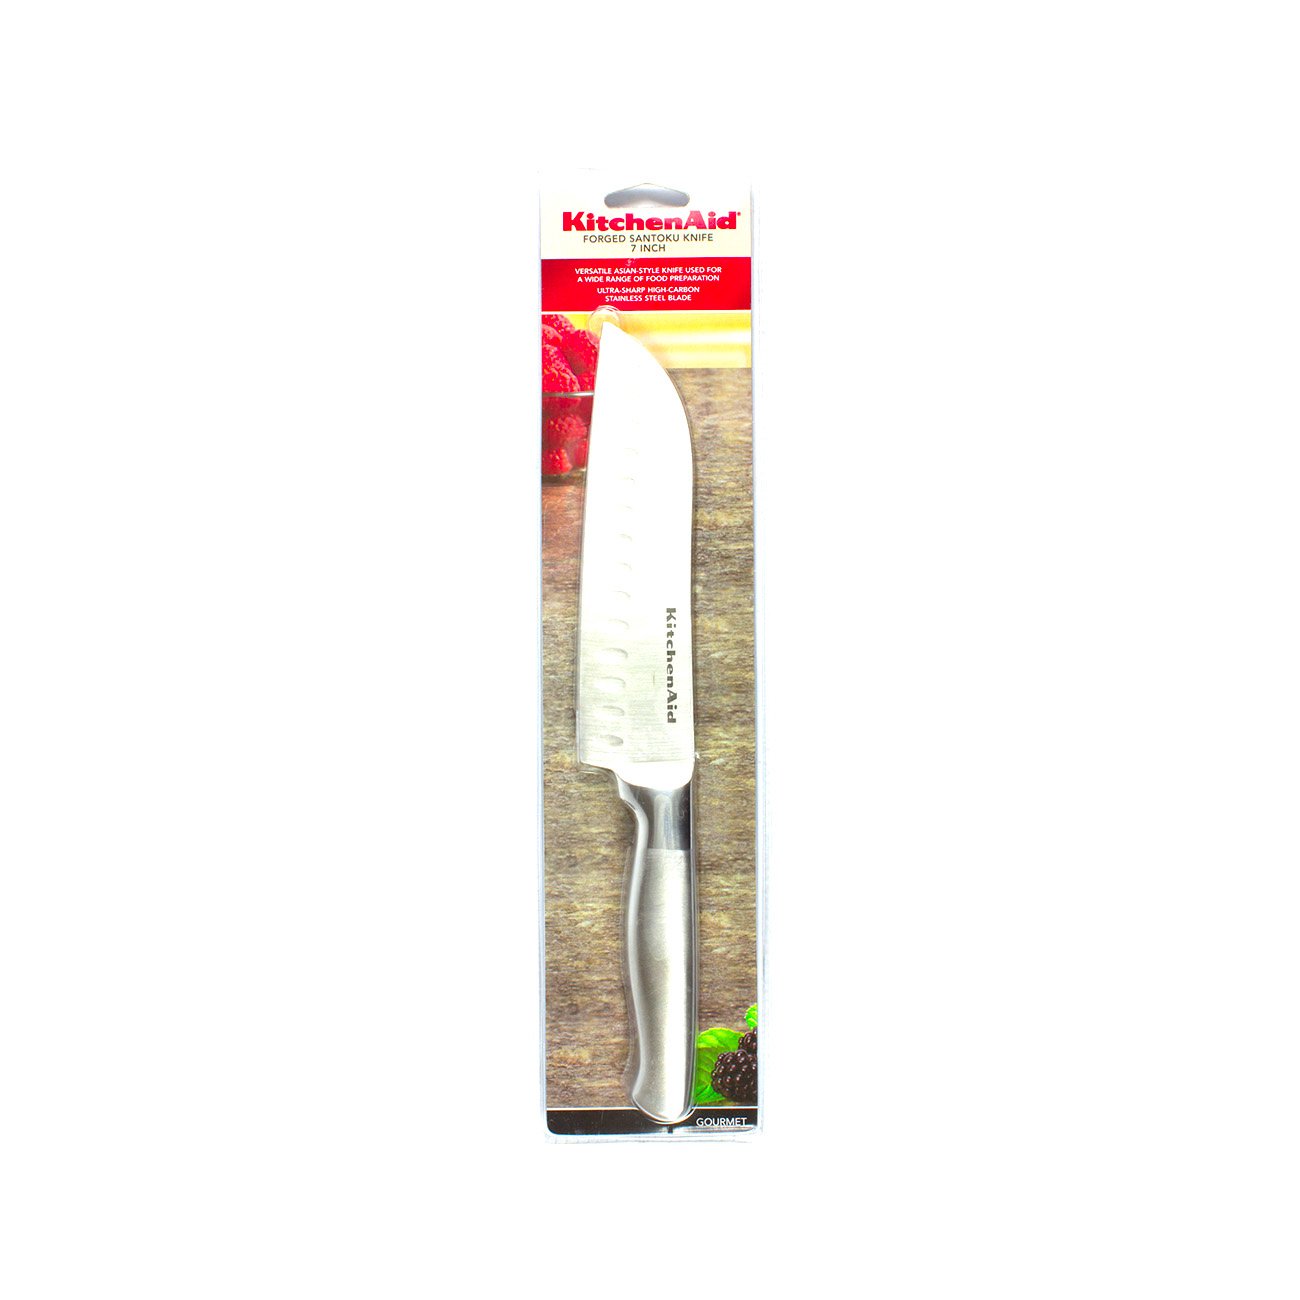 KitchenAid 7 Inch Forged Santoku Knife - Shop Knives at H-E-B